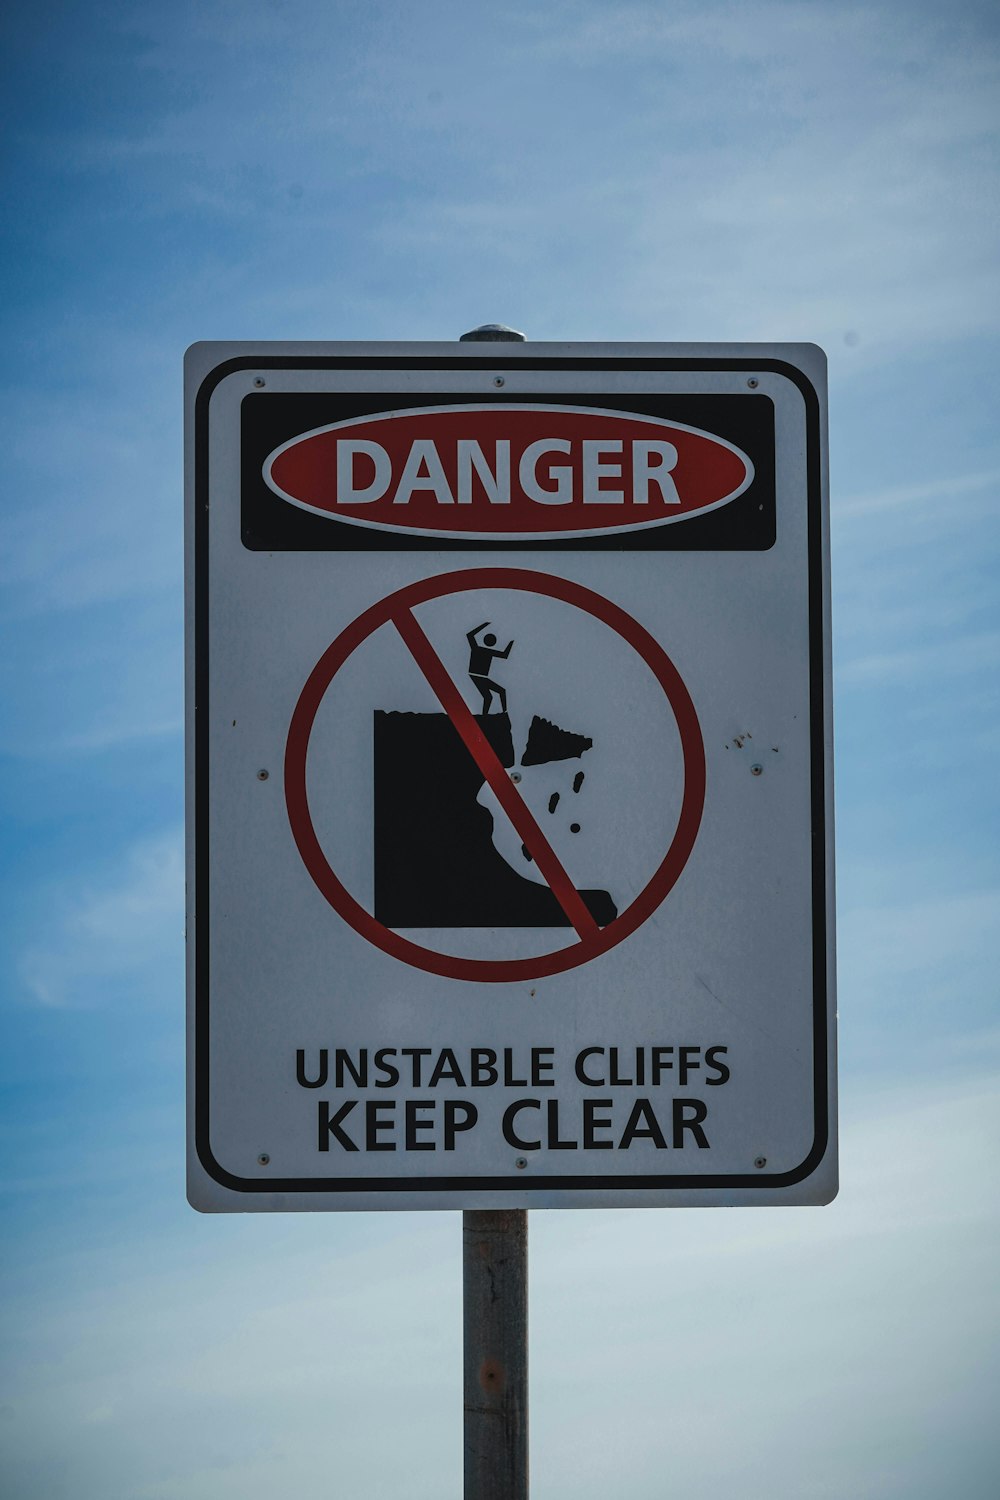 不安定な崖の危険を警告する標識